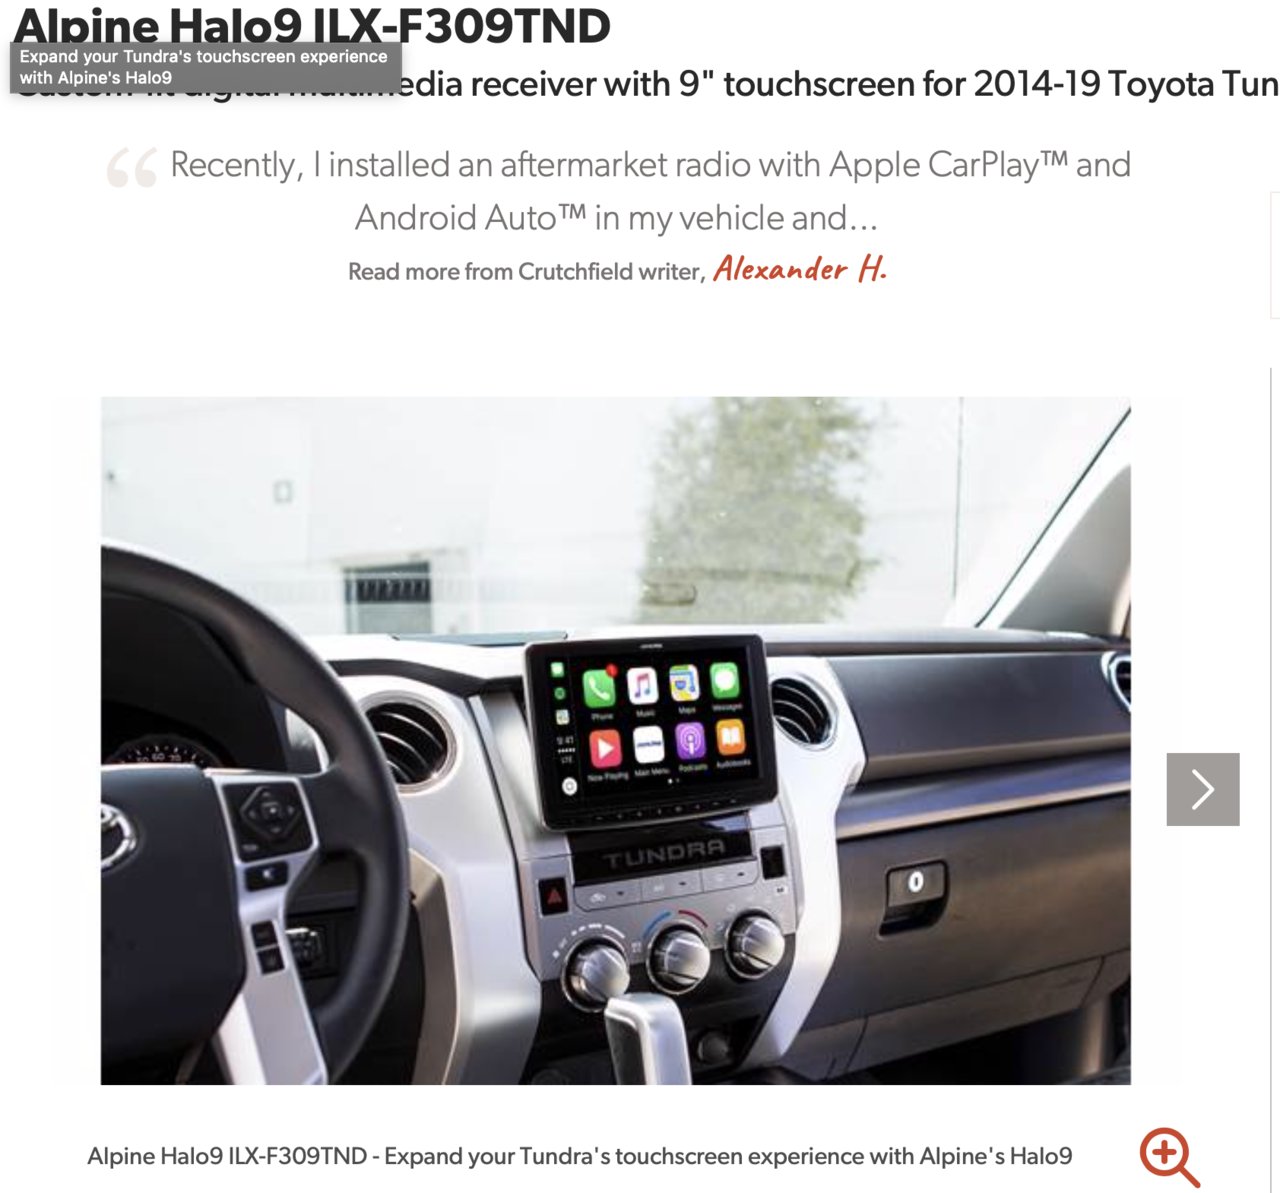 2020 Tundra Stereo Upgrade | Toyota Tundra Forum